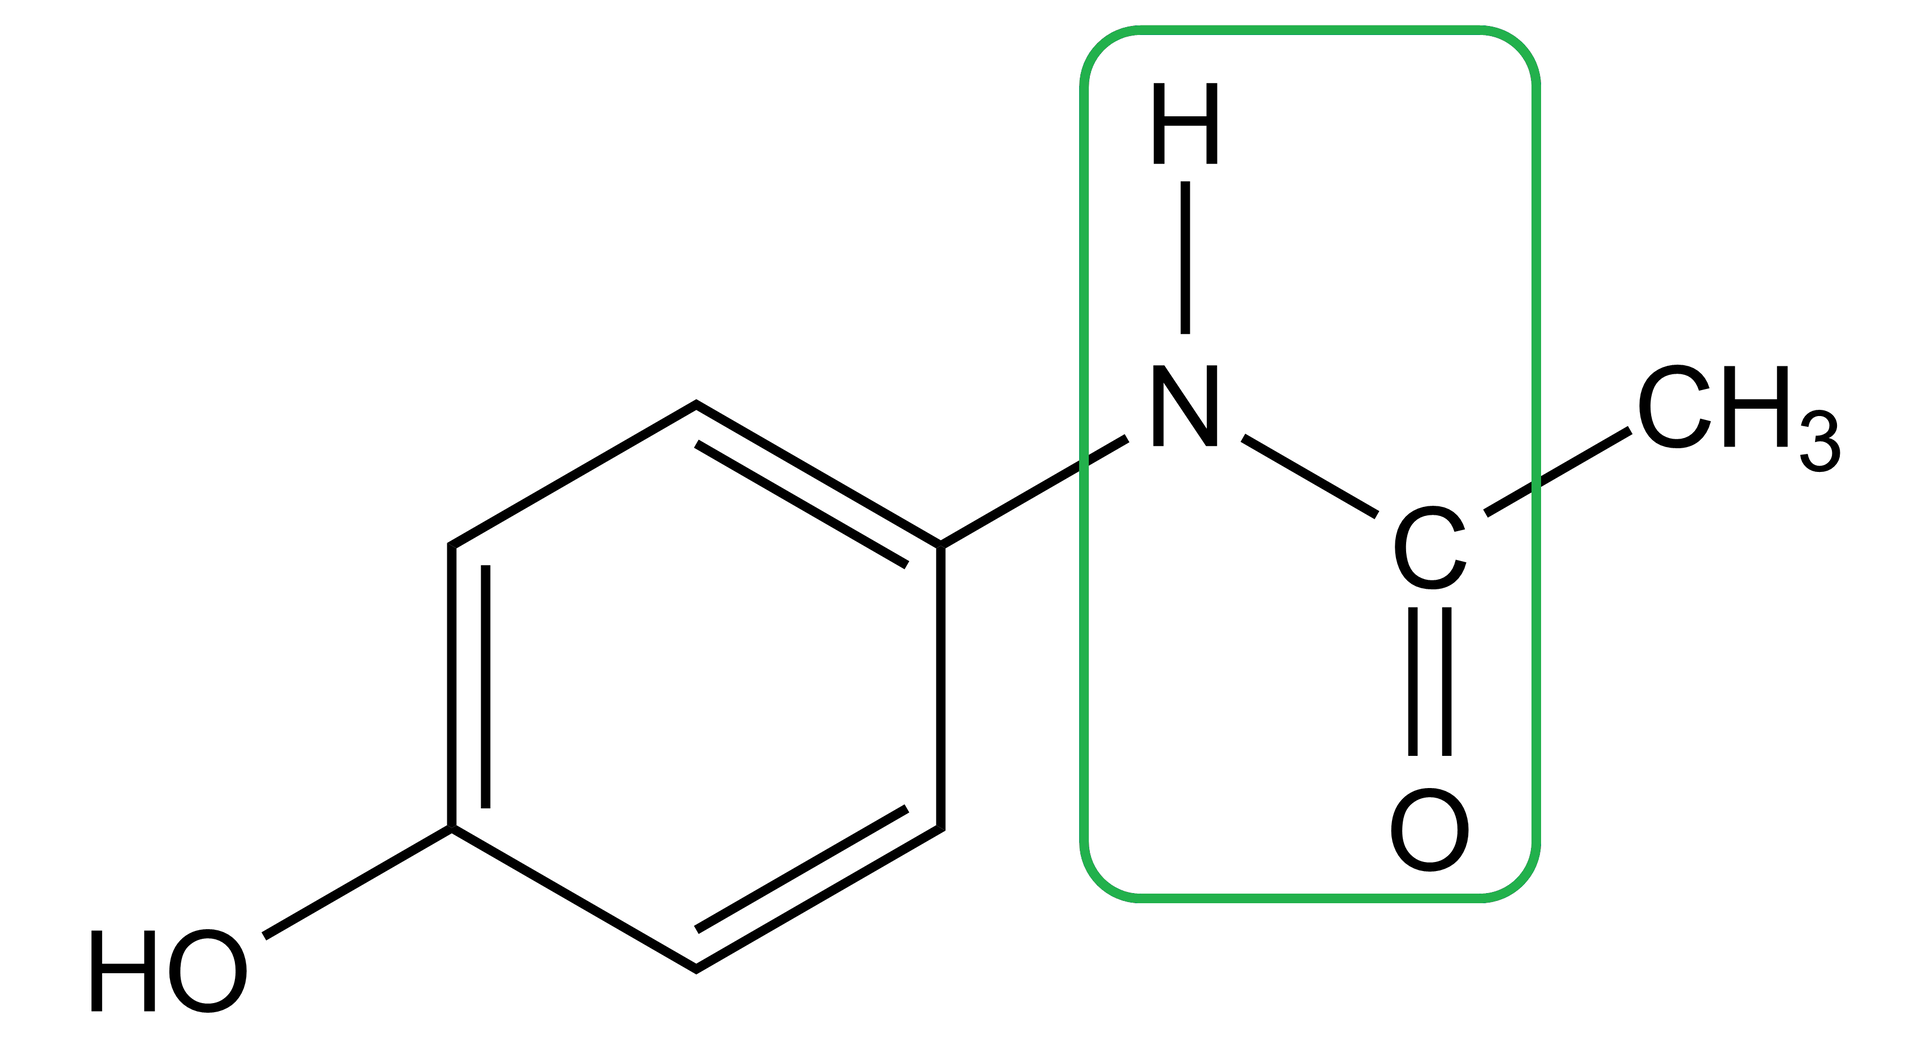 Ilustracja przedstawiająca wzór strukturalny paracetamolu o strukturze grupa CH3 związana z atomem węgla połączonym za pomocą wiązani podwójnego z atomem tlenu oraz za pomocą wiązania pojedynczego z grupą NH, która to łączy się z grupą 4-hydroksyfenylową. Wiązanie amidowe występuje pomiędzy atomem węgla związanym za pomocą wiązania podwójnego z atomem tlenu oraz atomem azotu związanym z atomem wodoru i, w tym przypadku, z podstawnikiem 4-hydroksyfenylowym.